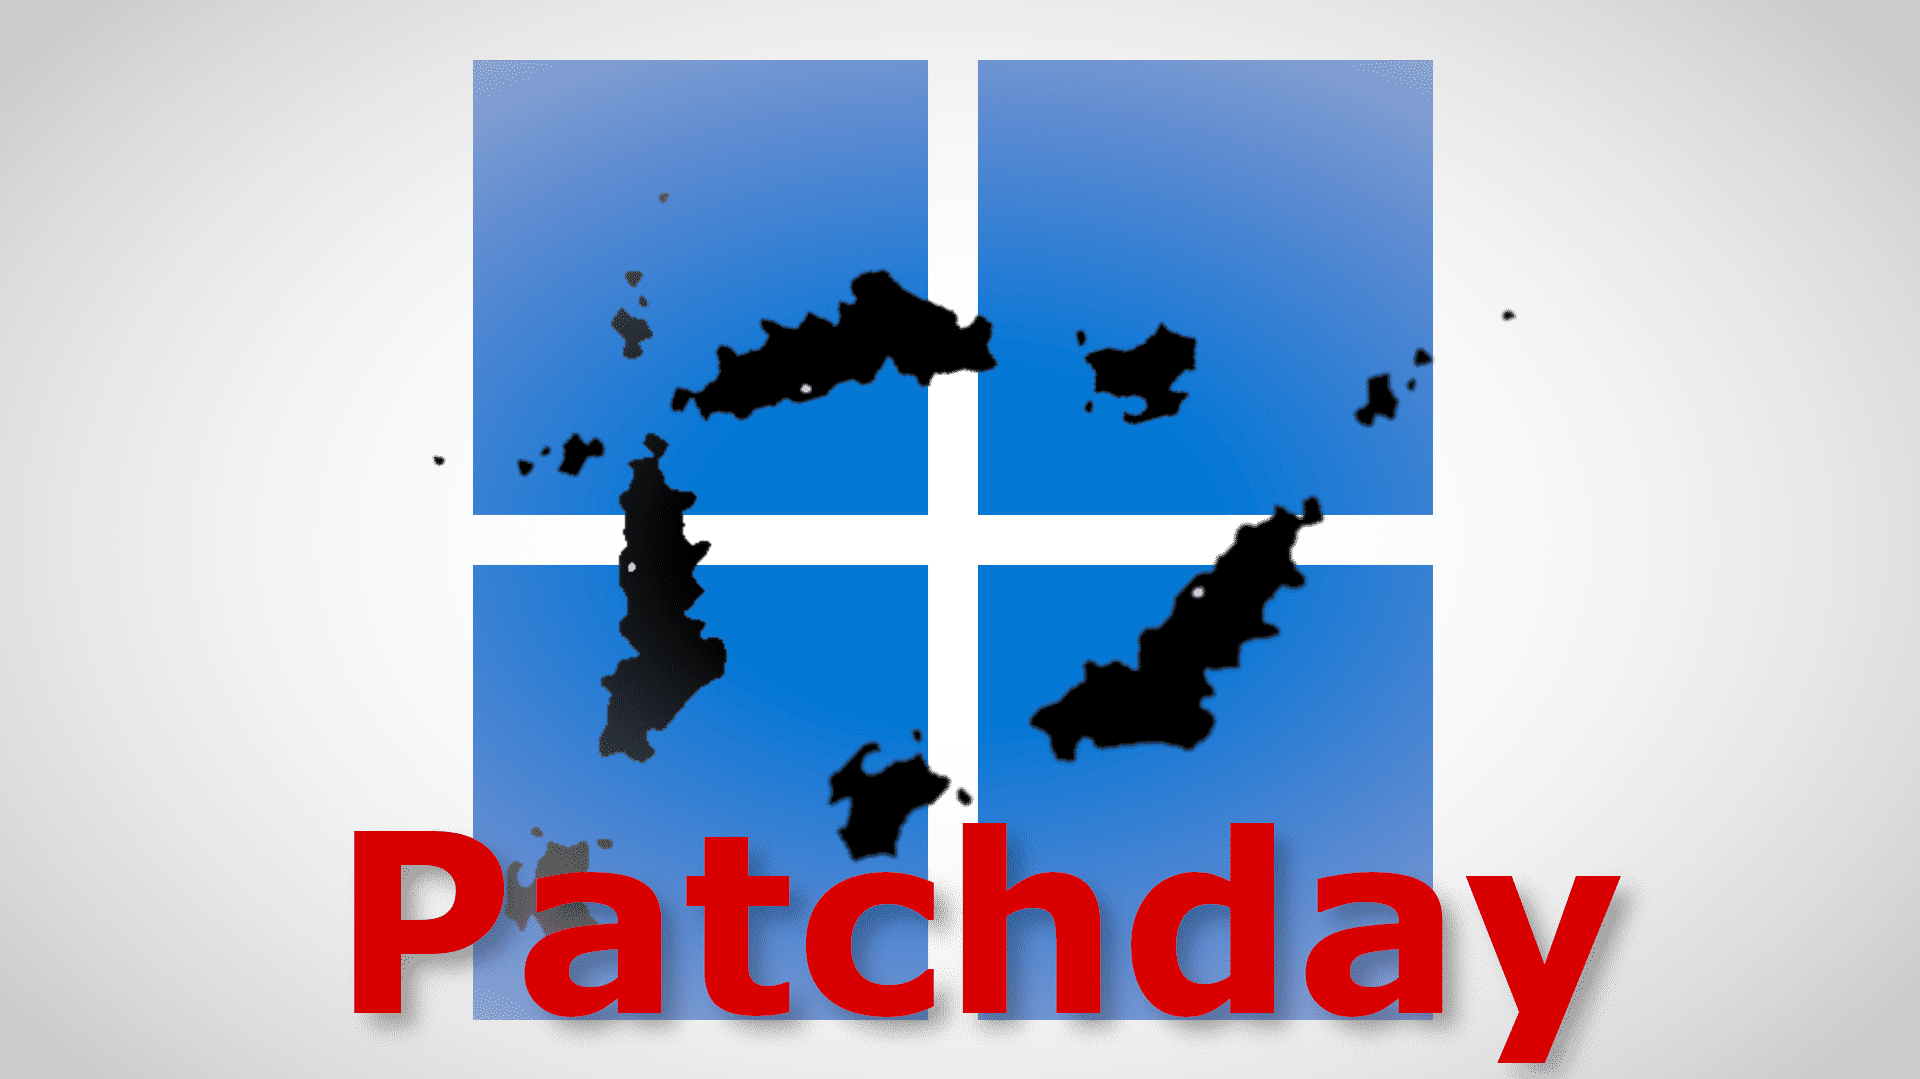 Windows-Logo mit Flecken und der Aufschrift "Patchday"